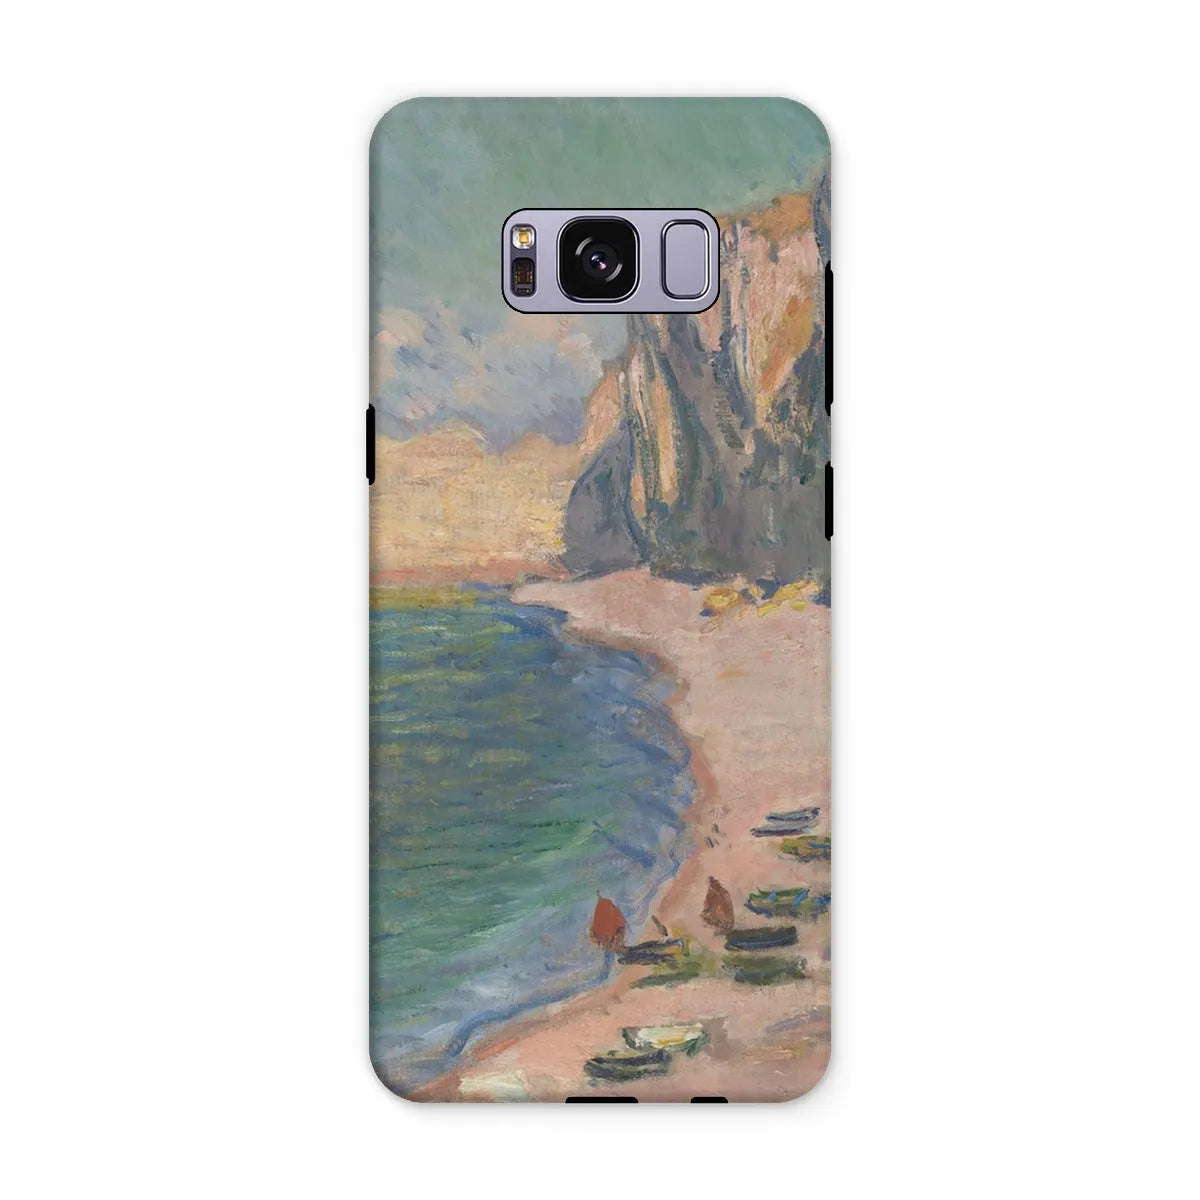 étretat - Impressionist Art Phone Case - Claude Monet - Samsung Galaxy S8 Plus / Matte - Mobile Phone Cases